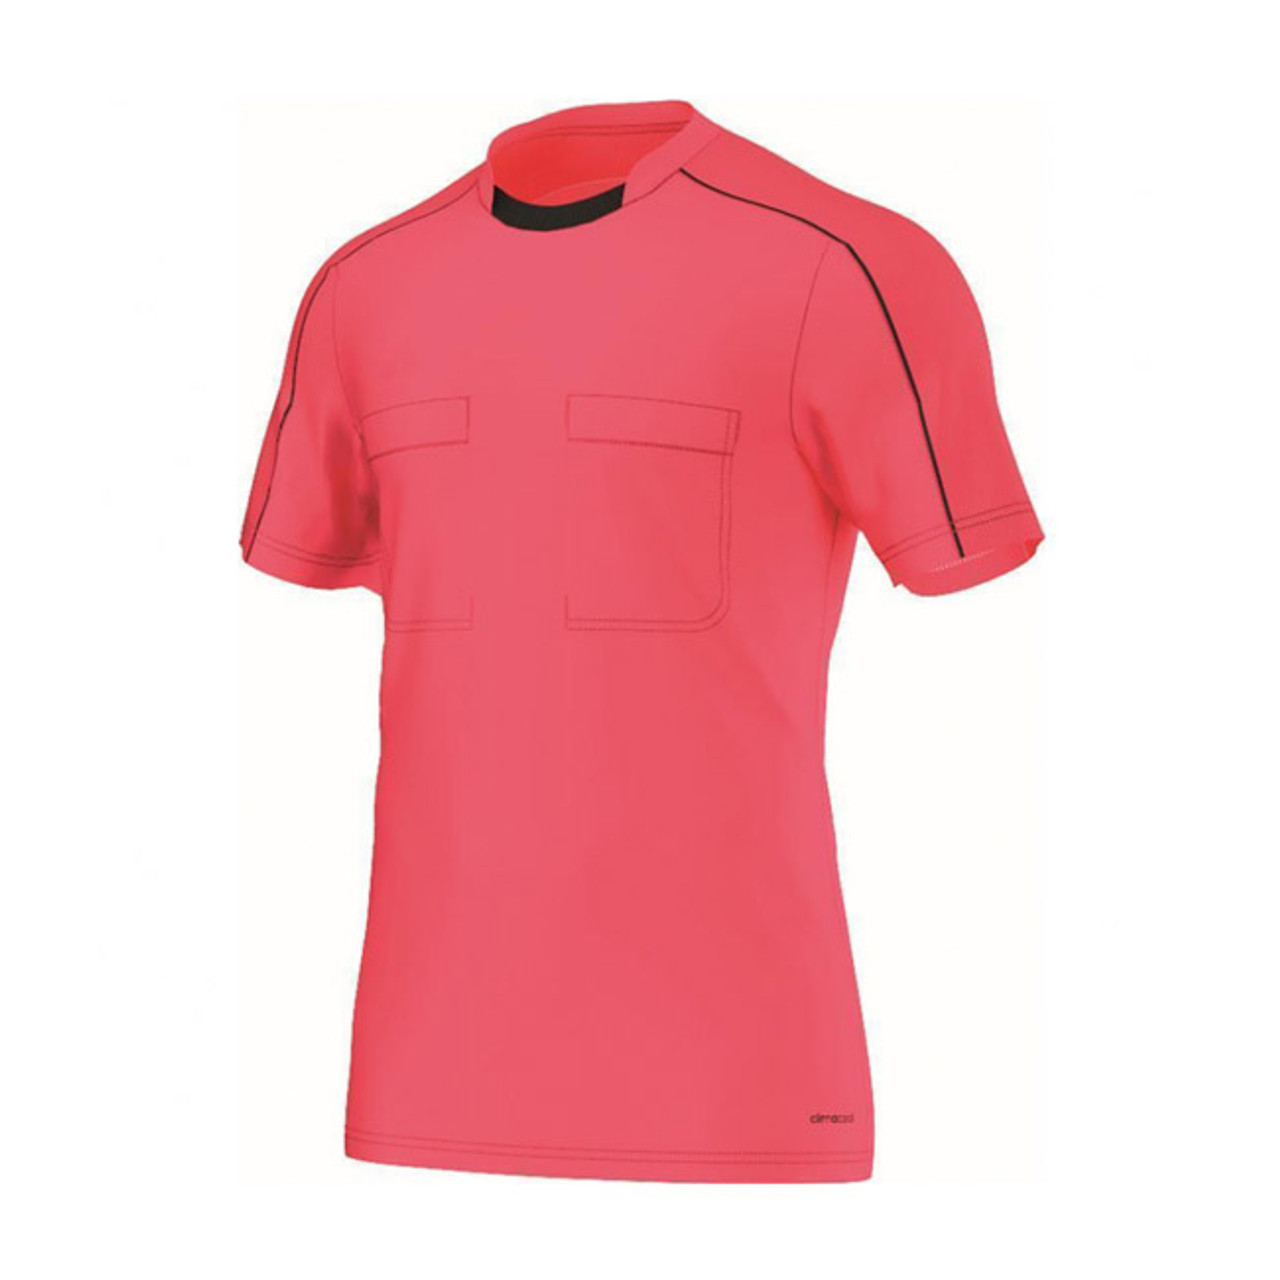 daar ben ik het mee eens Voorvoegsel Verlichten 2016 Adidas Referee Jersey Short Sleeve (Shock Red)